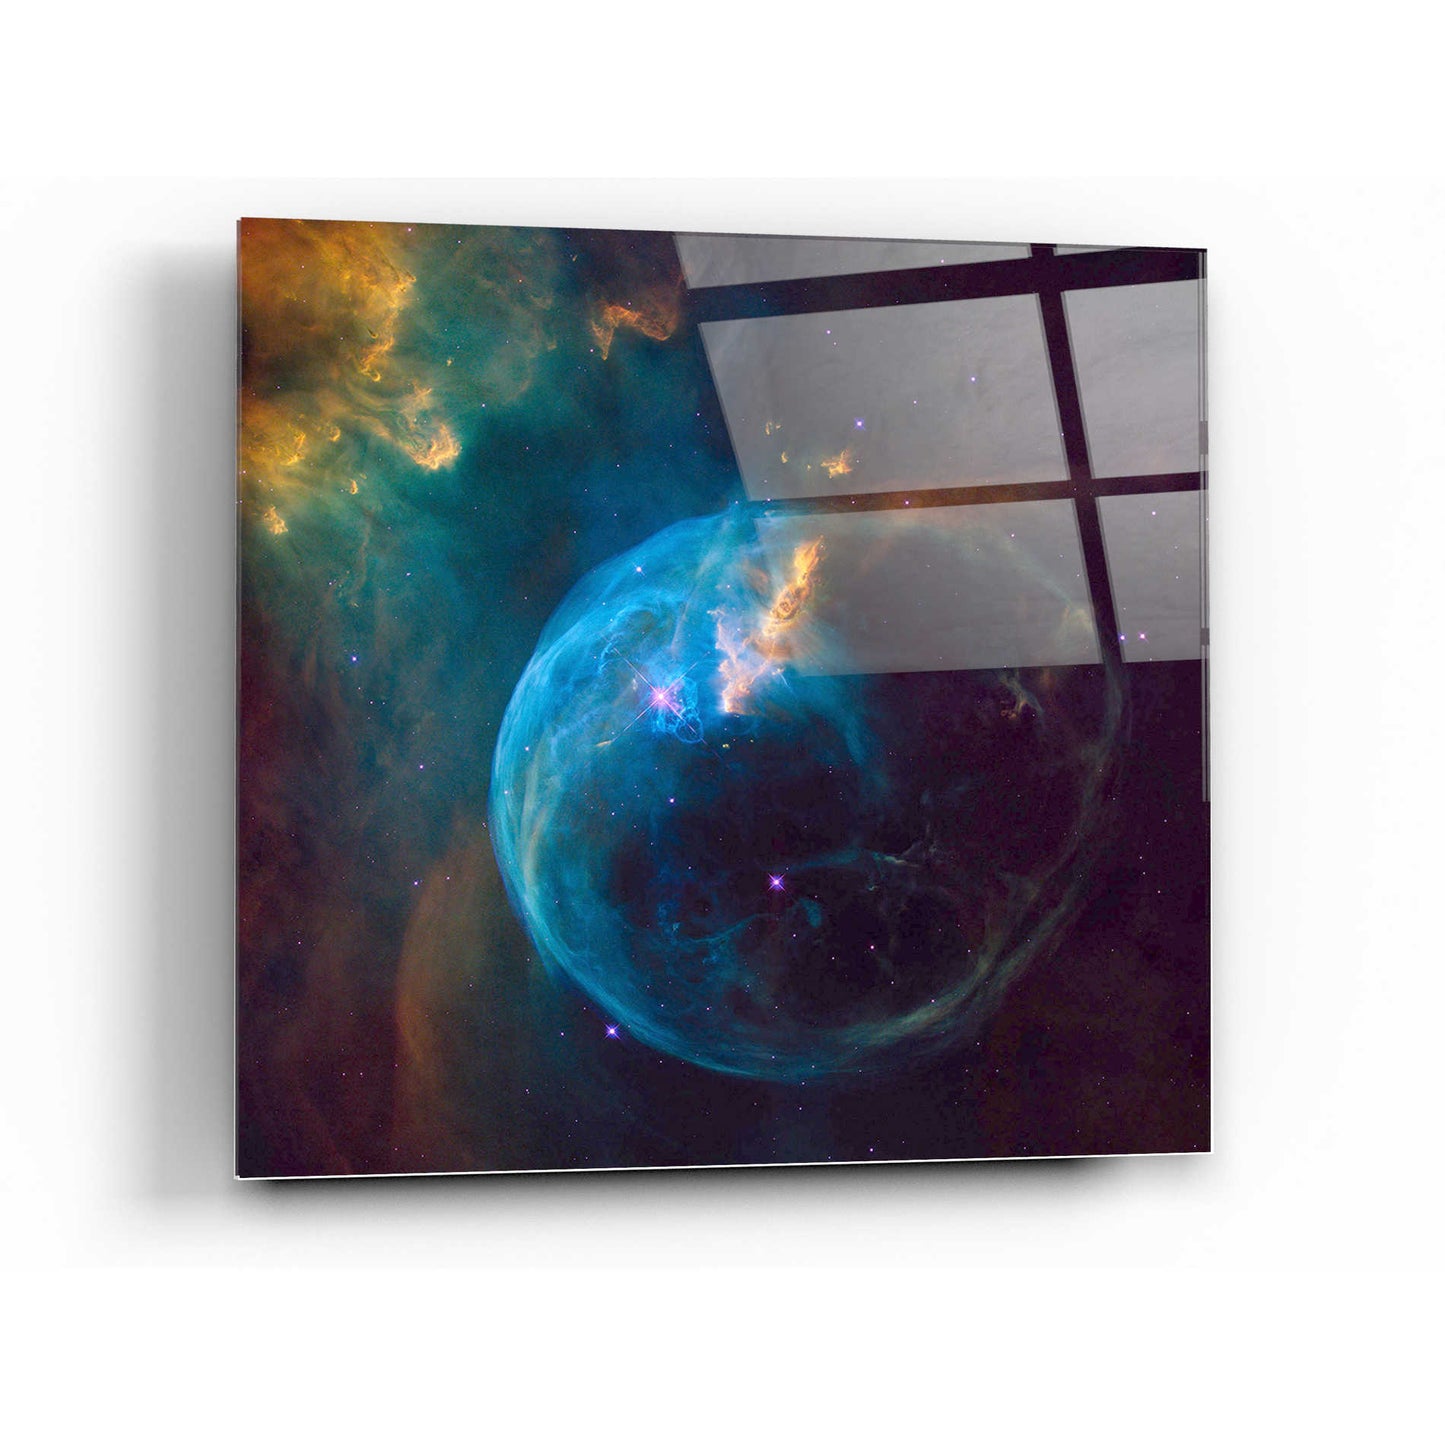 Epic Art "Bubble Nebula" Hubble Space Telescope Acrylic Glass Wall Art,24x24